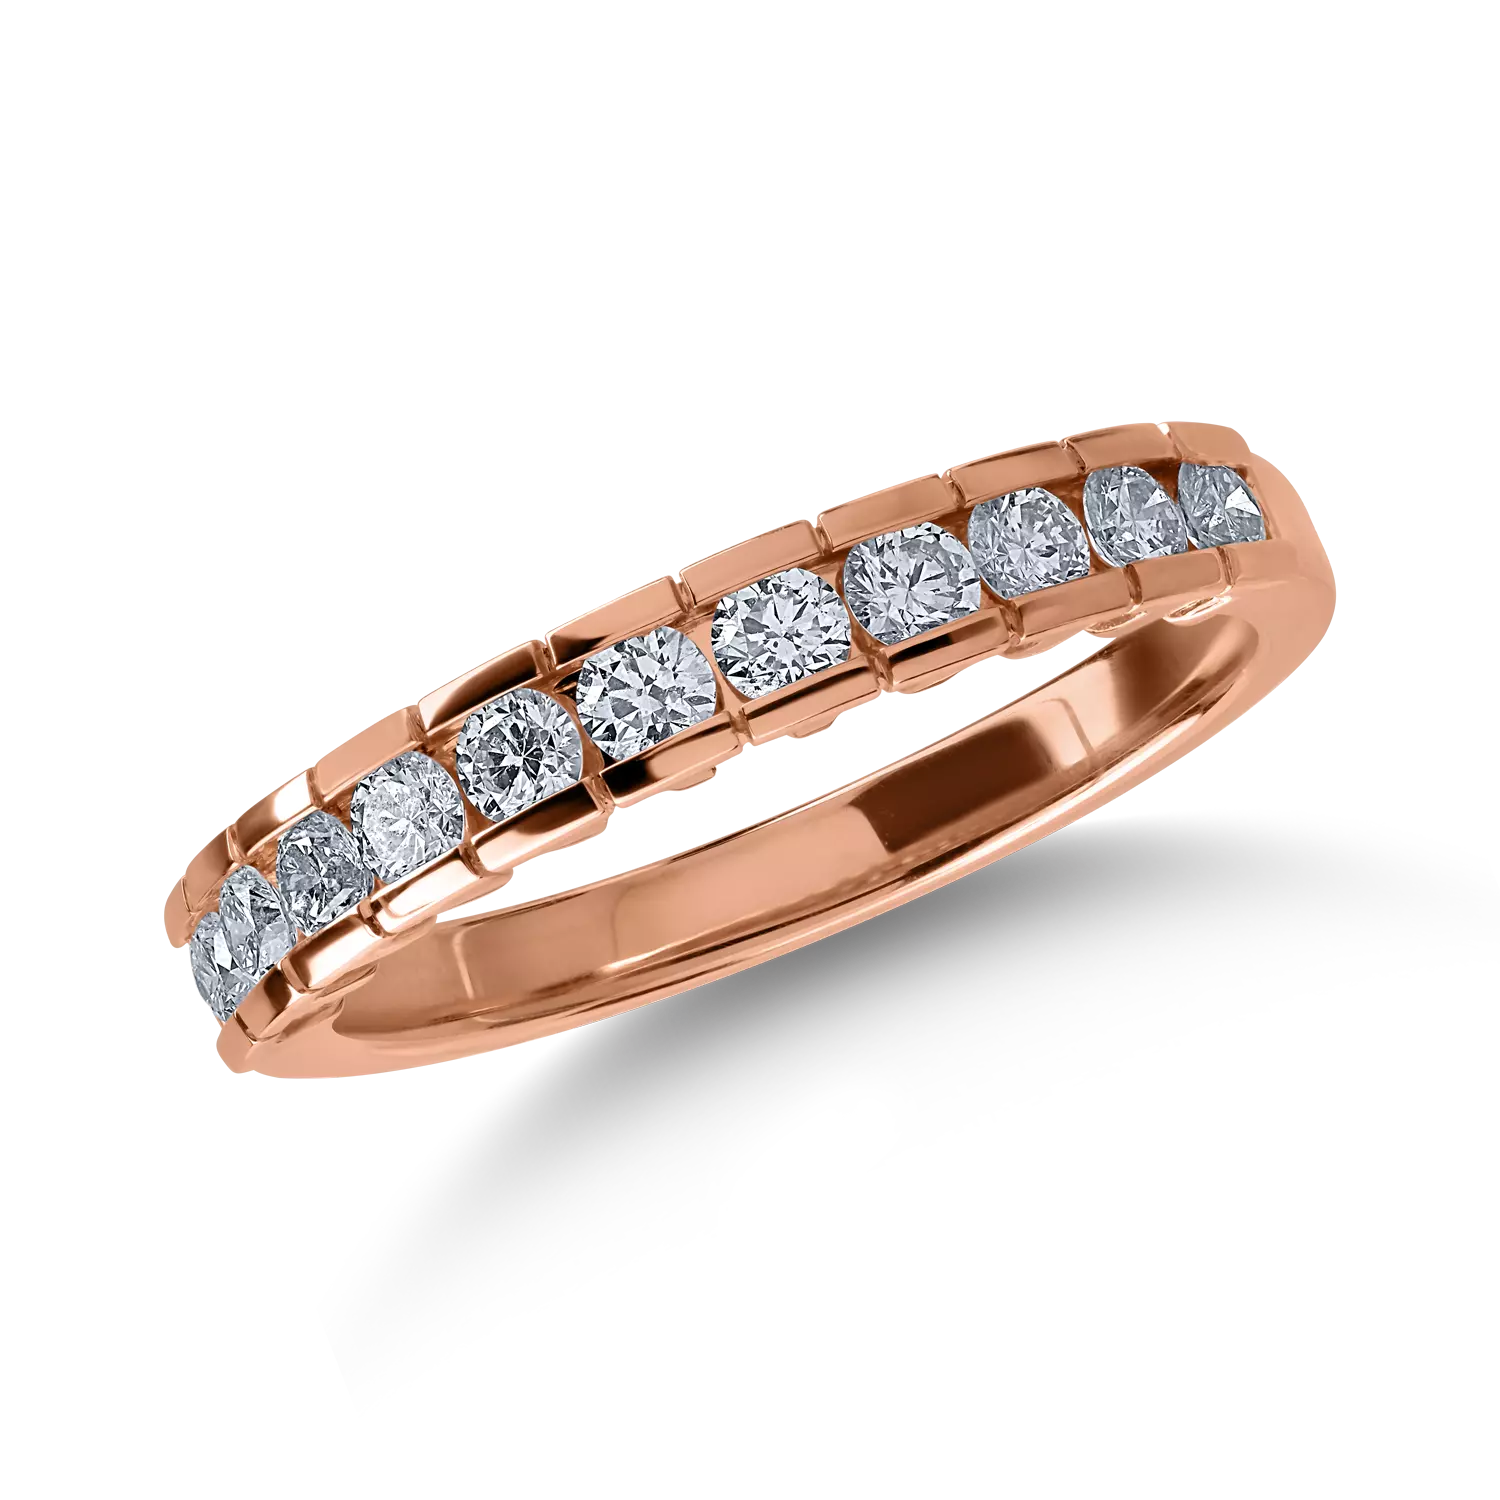 Fél örökkévalóság gyűrű rózsaszín aranyból. 0.52ct gyémántokkal